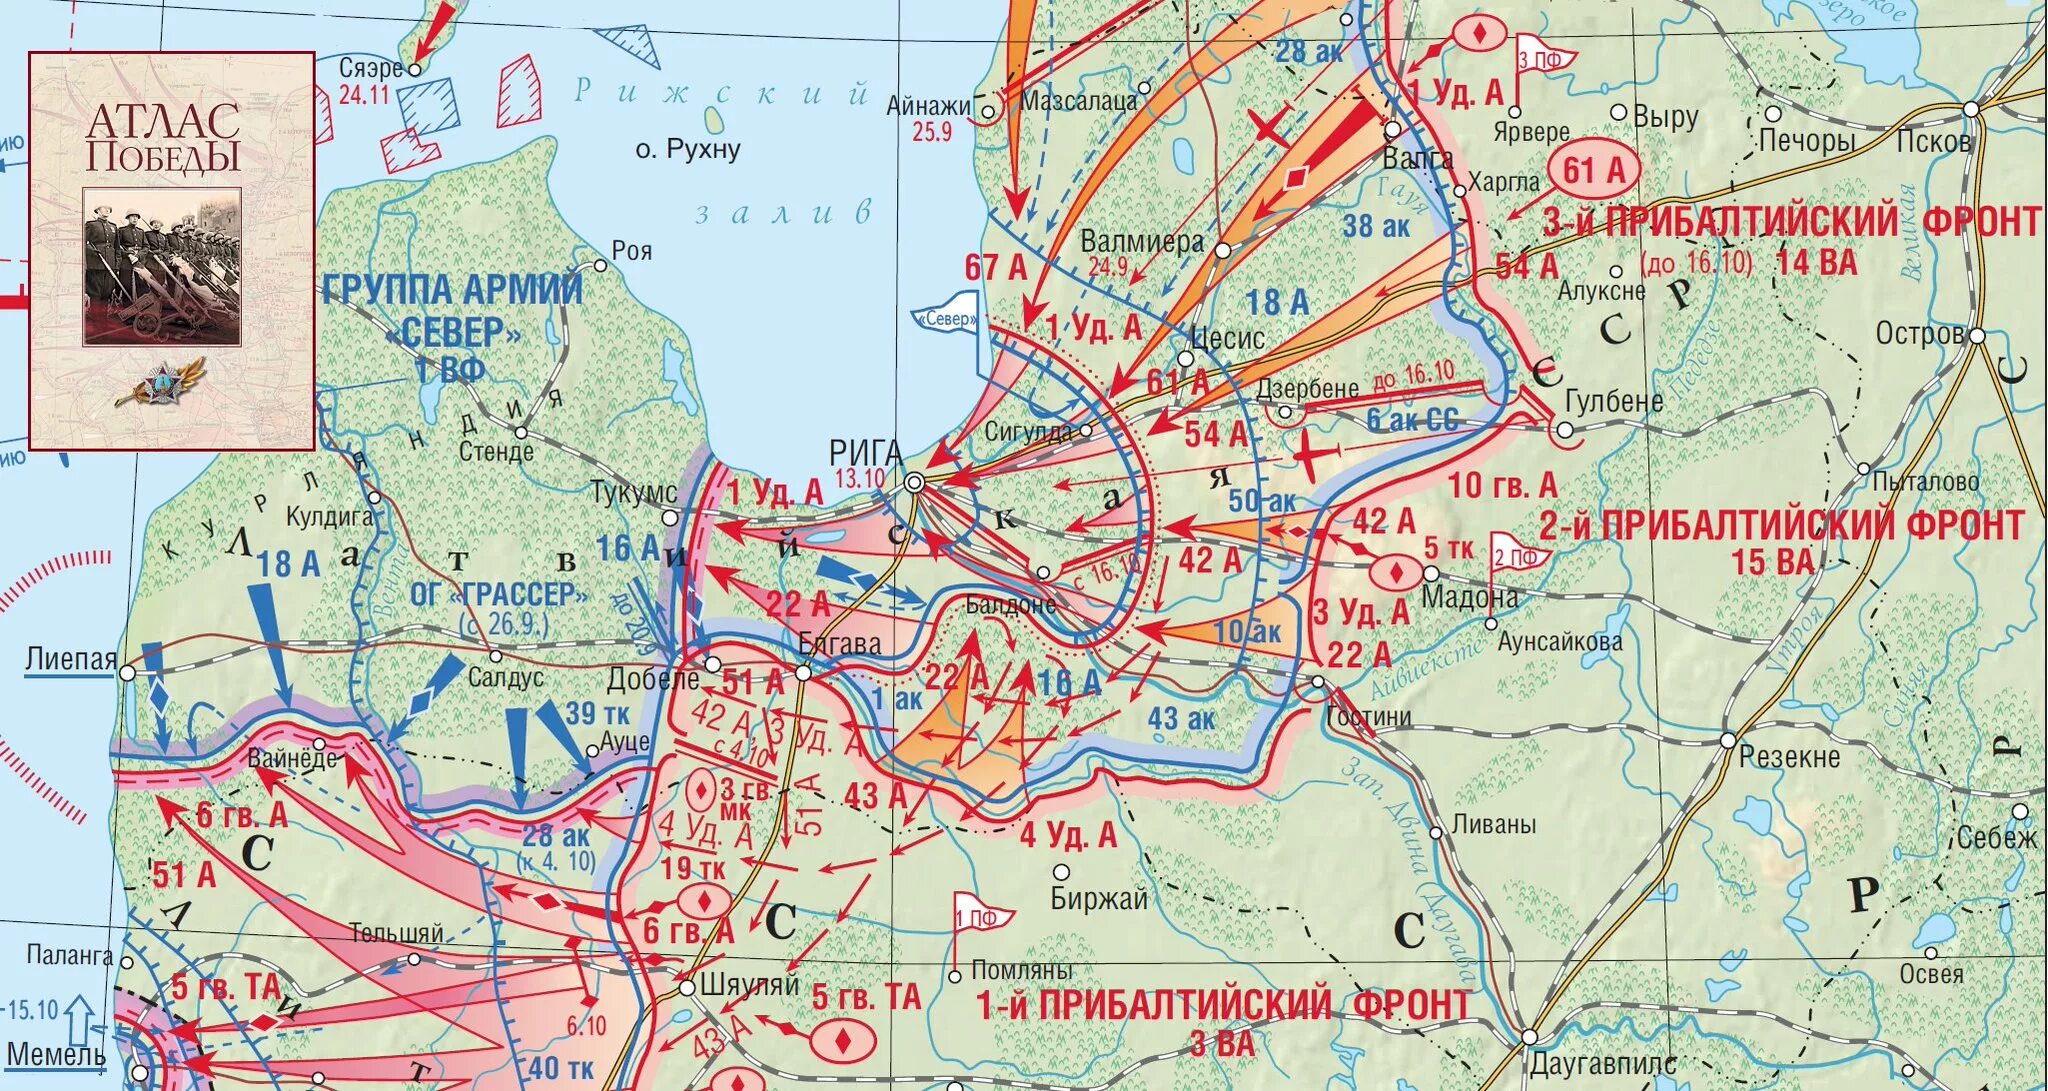 1 из фронтов великой отечественной войны. Прибалтийская стратегическая наступательная операция 1944 года. Прибалтийская операция 14 сентября 24 ноября 1944. 13 Октября 1944 г освобождение Риги. Прибалтийская операция 1944 Рижская операция.